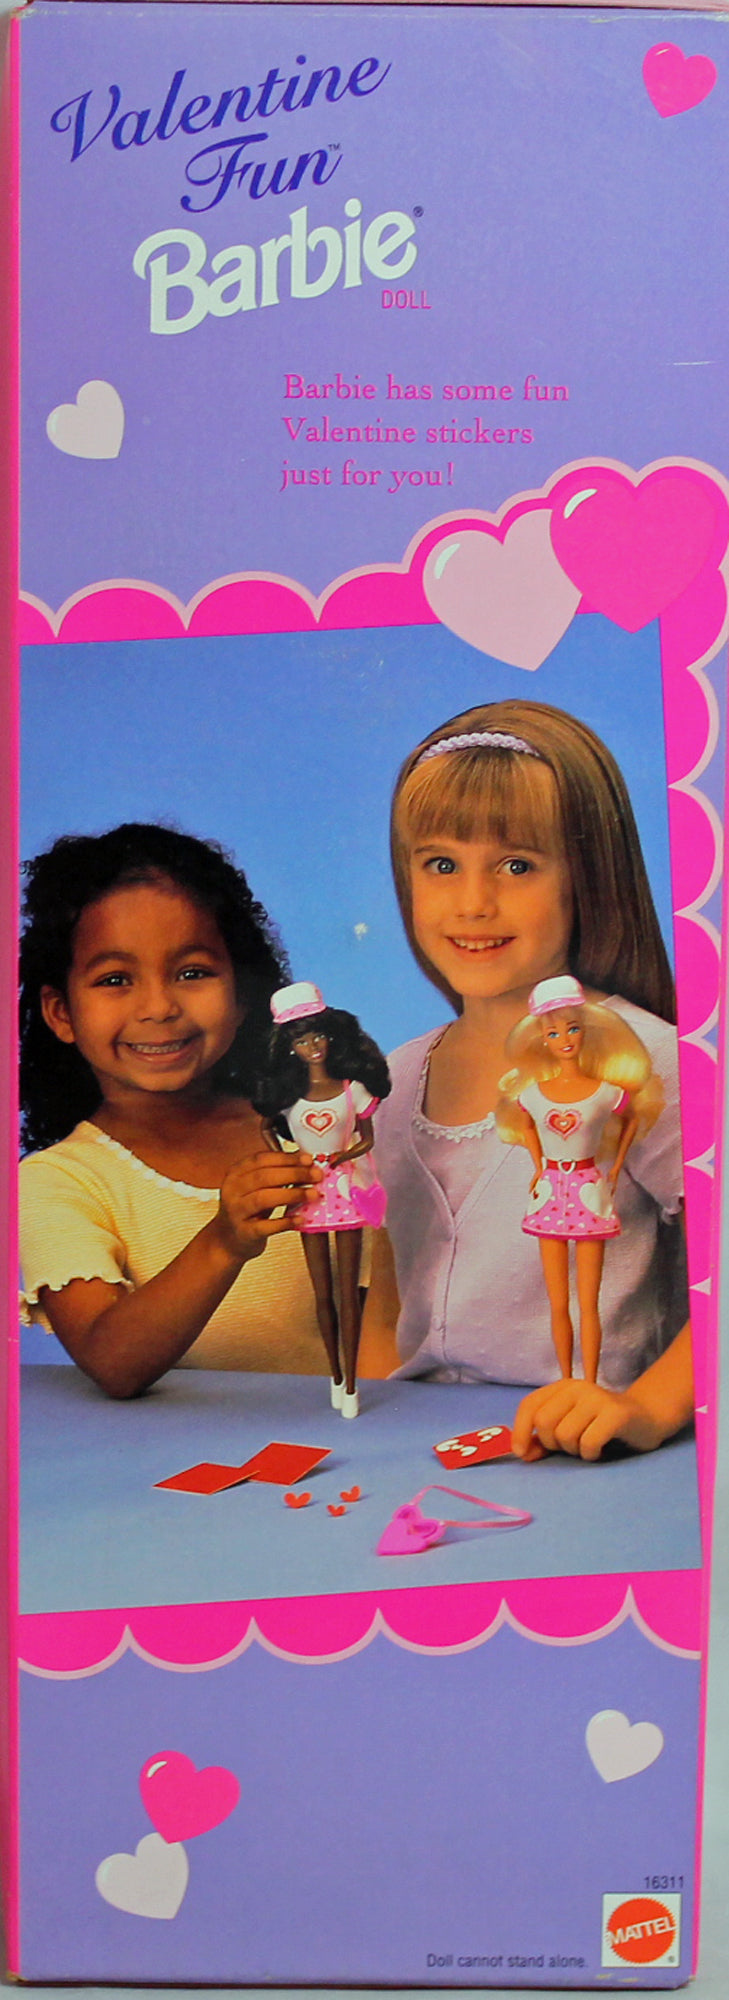 1996 Valentine Fun Barbie (16311)